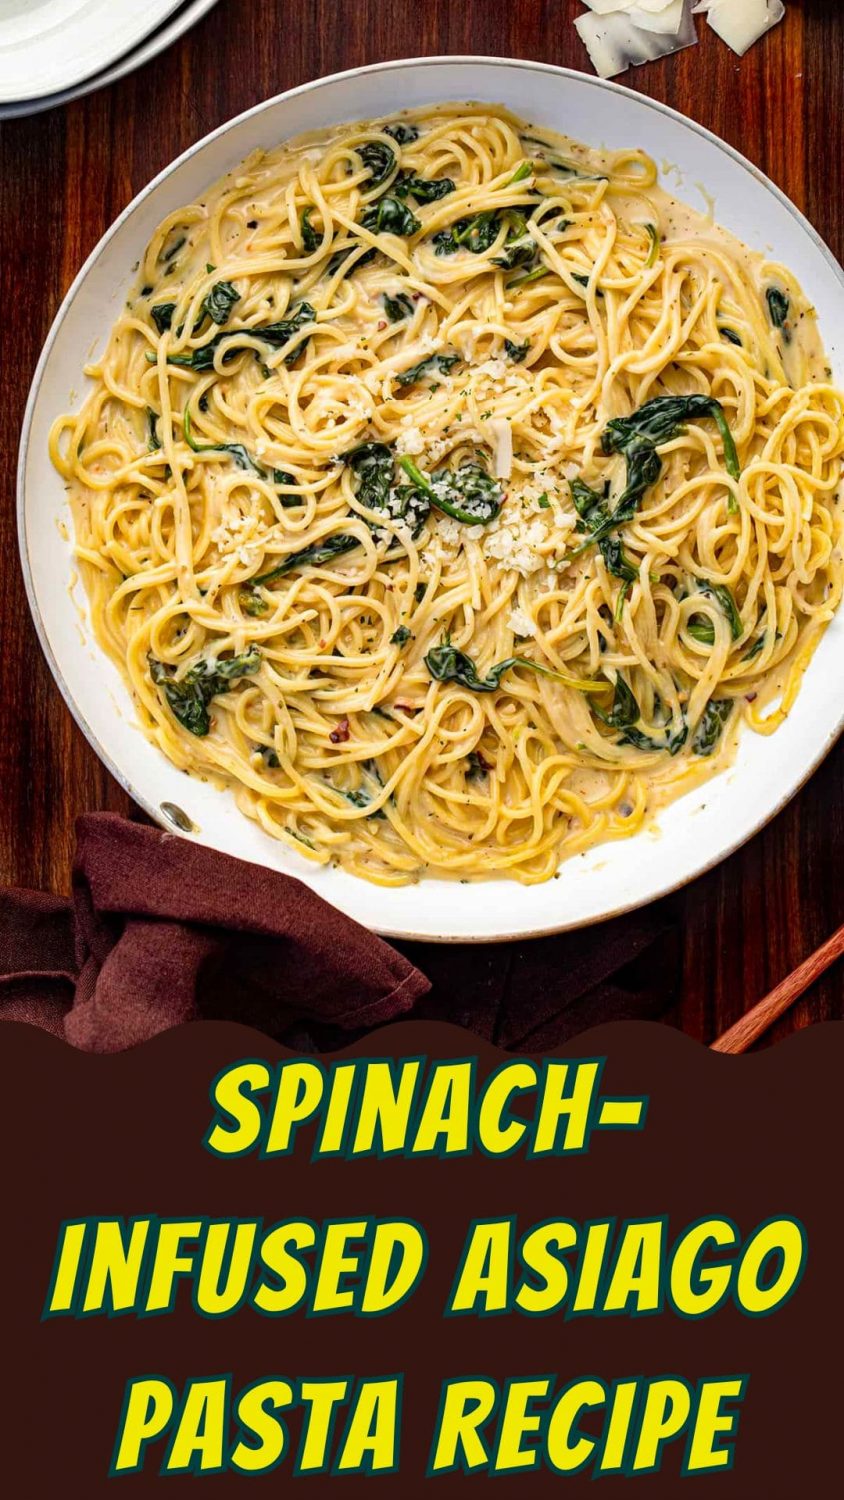 Spinach-Infused Asiago Pasta Recipe